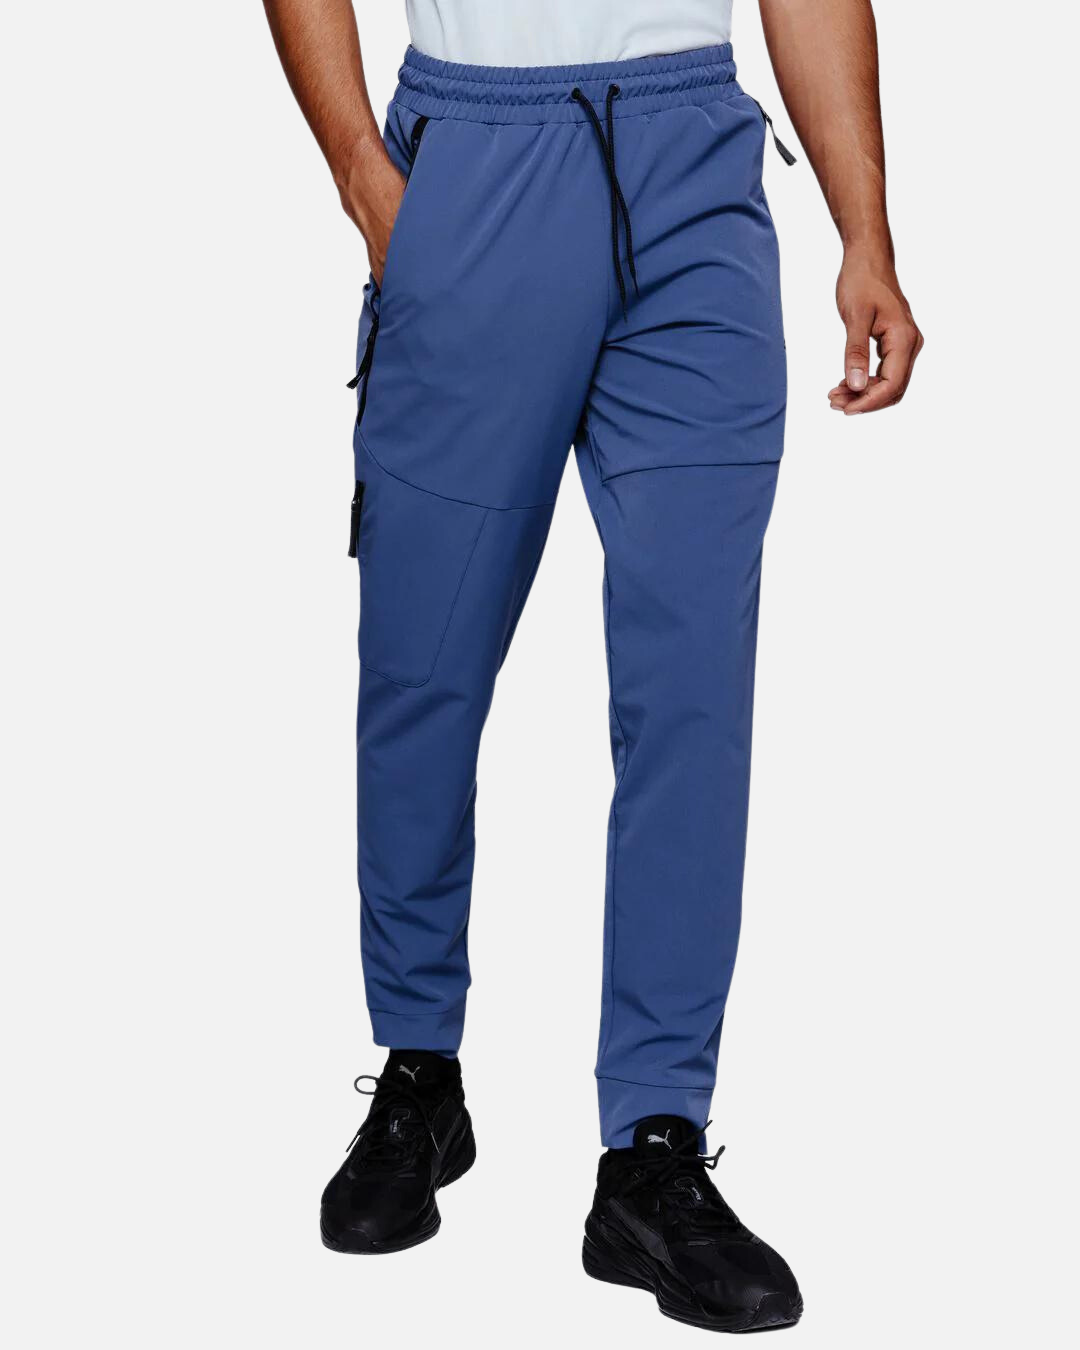 Pantalon Puma Tech - Bleu